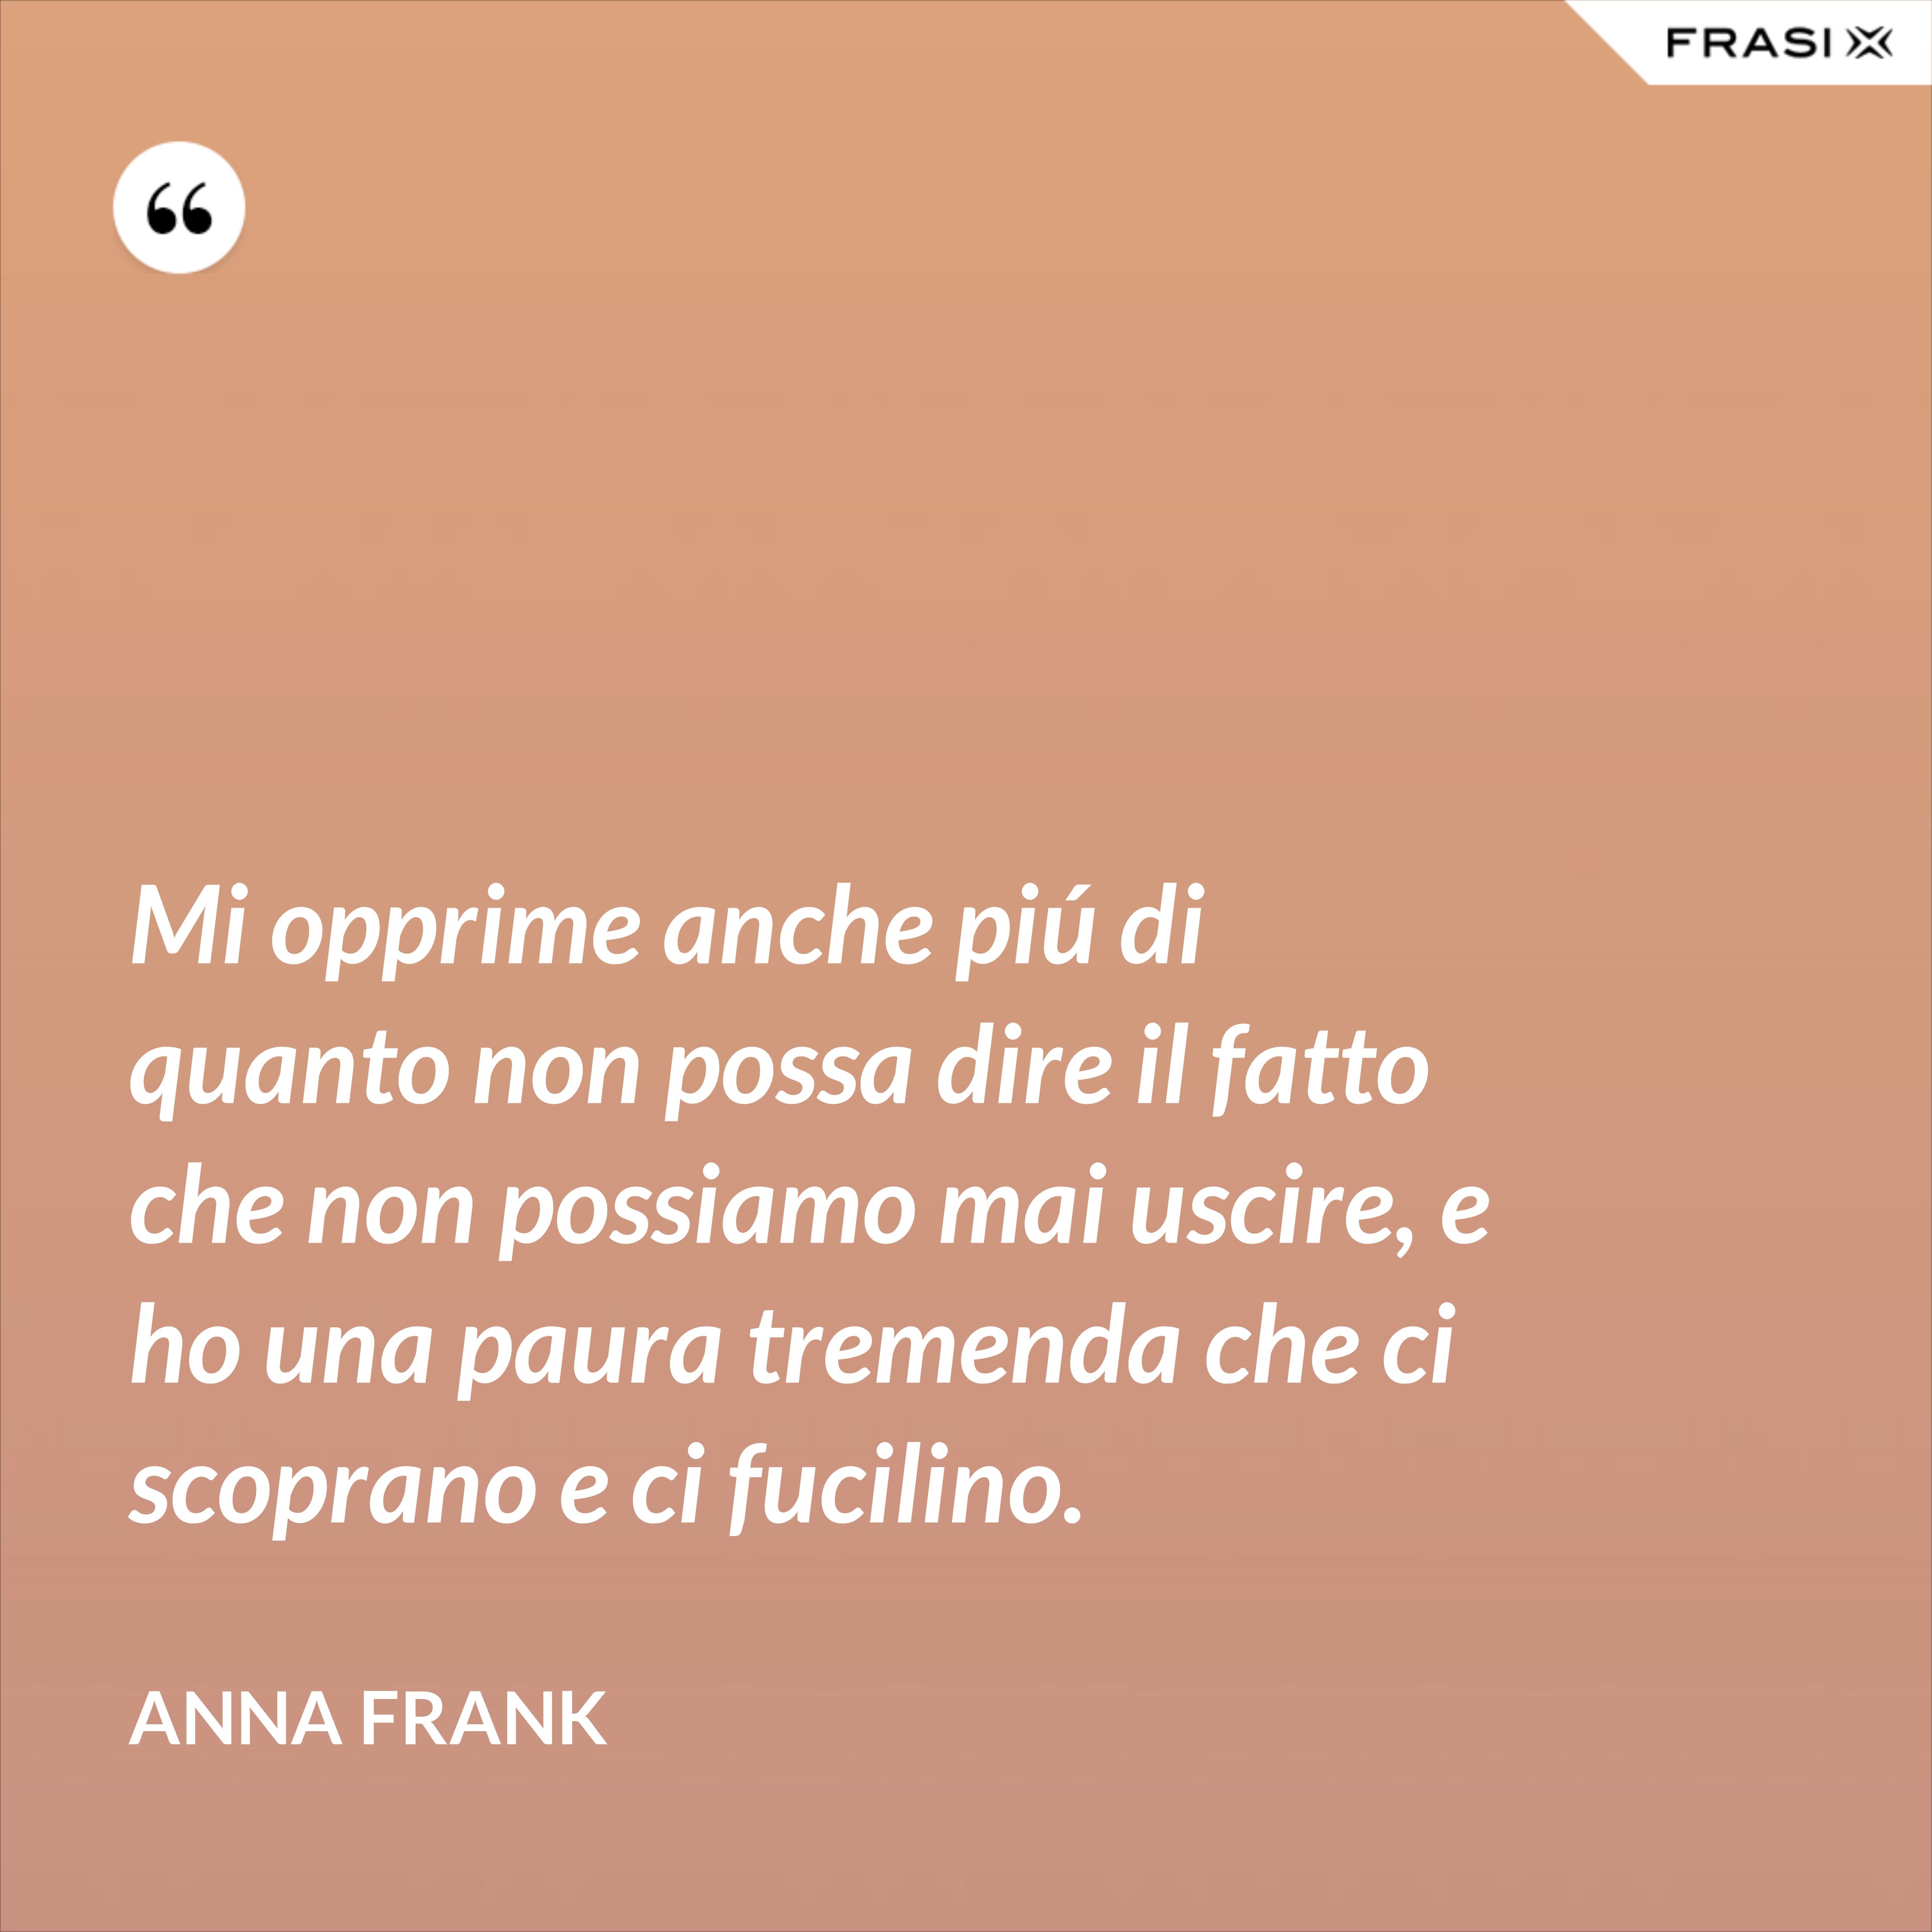 Mi opprime anche piú di quanto non possa dire il fatto che non possiamo mai uscire, e ho una paura tremenda che ci scoprano e ci fucilino. - Anna Frank